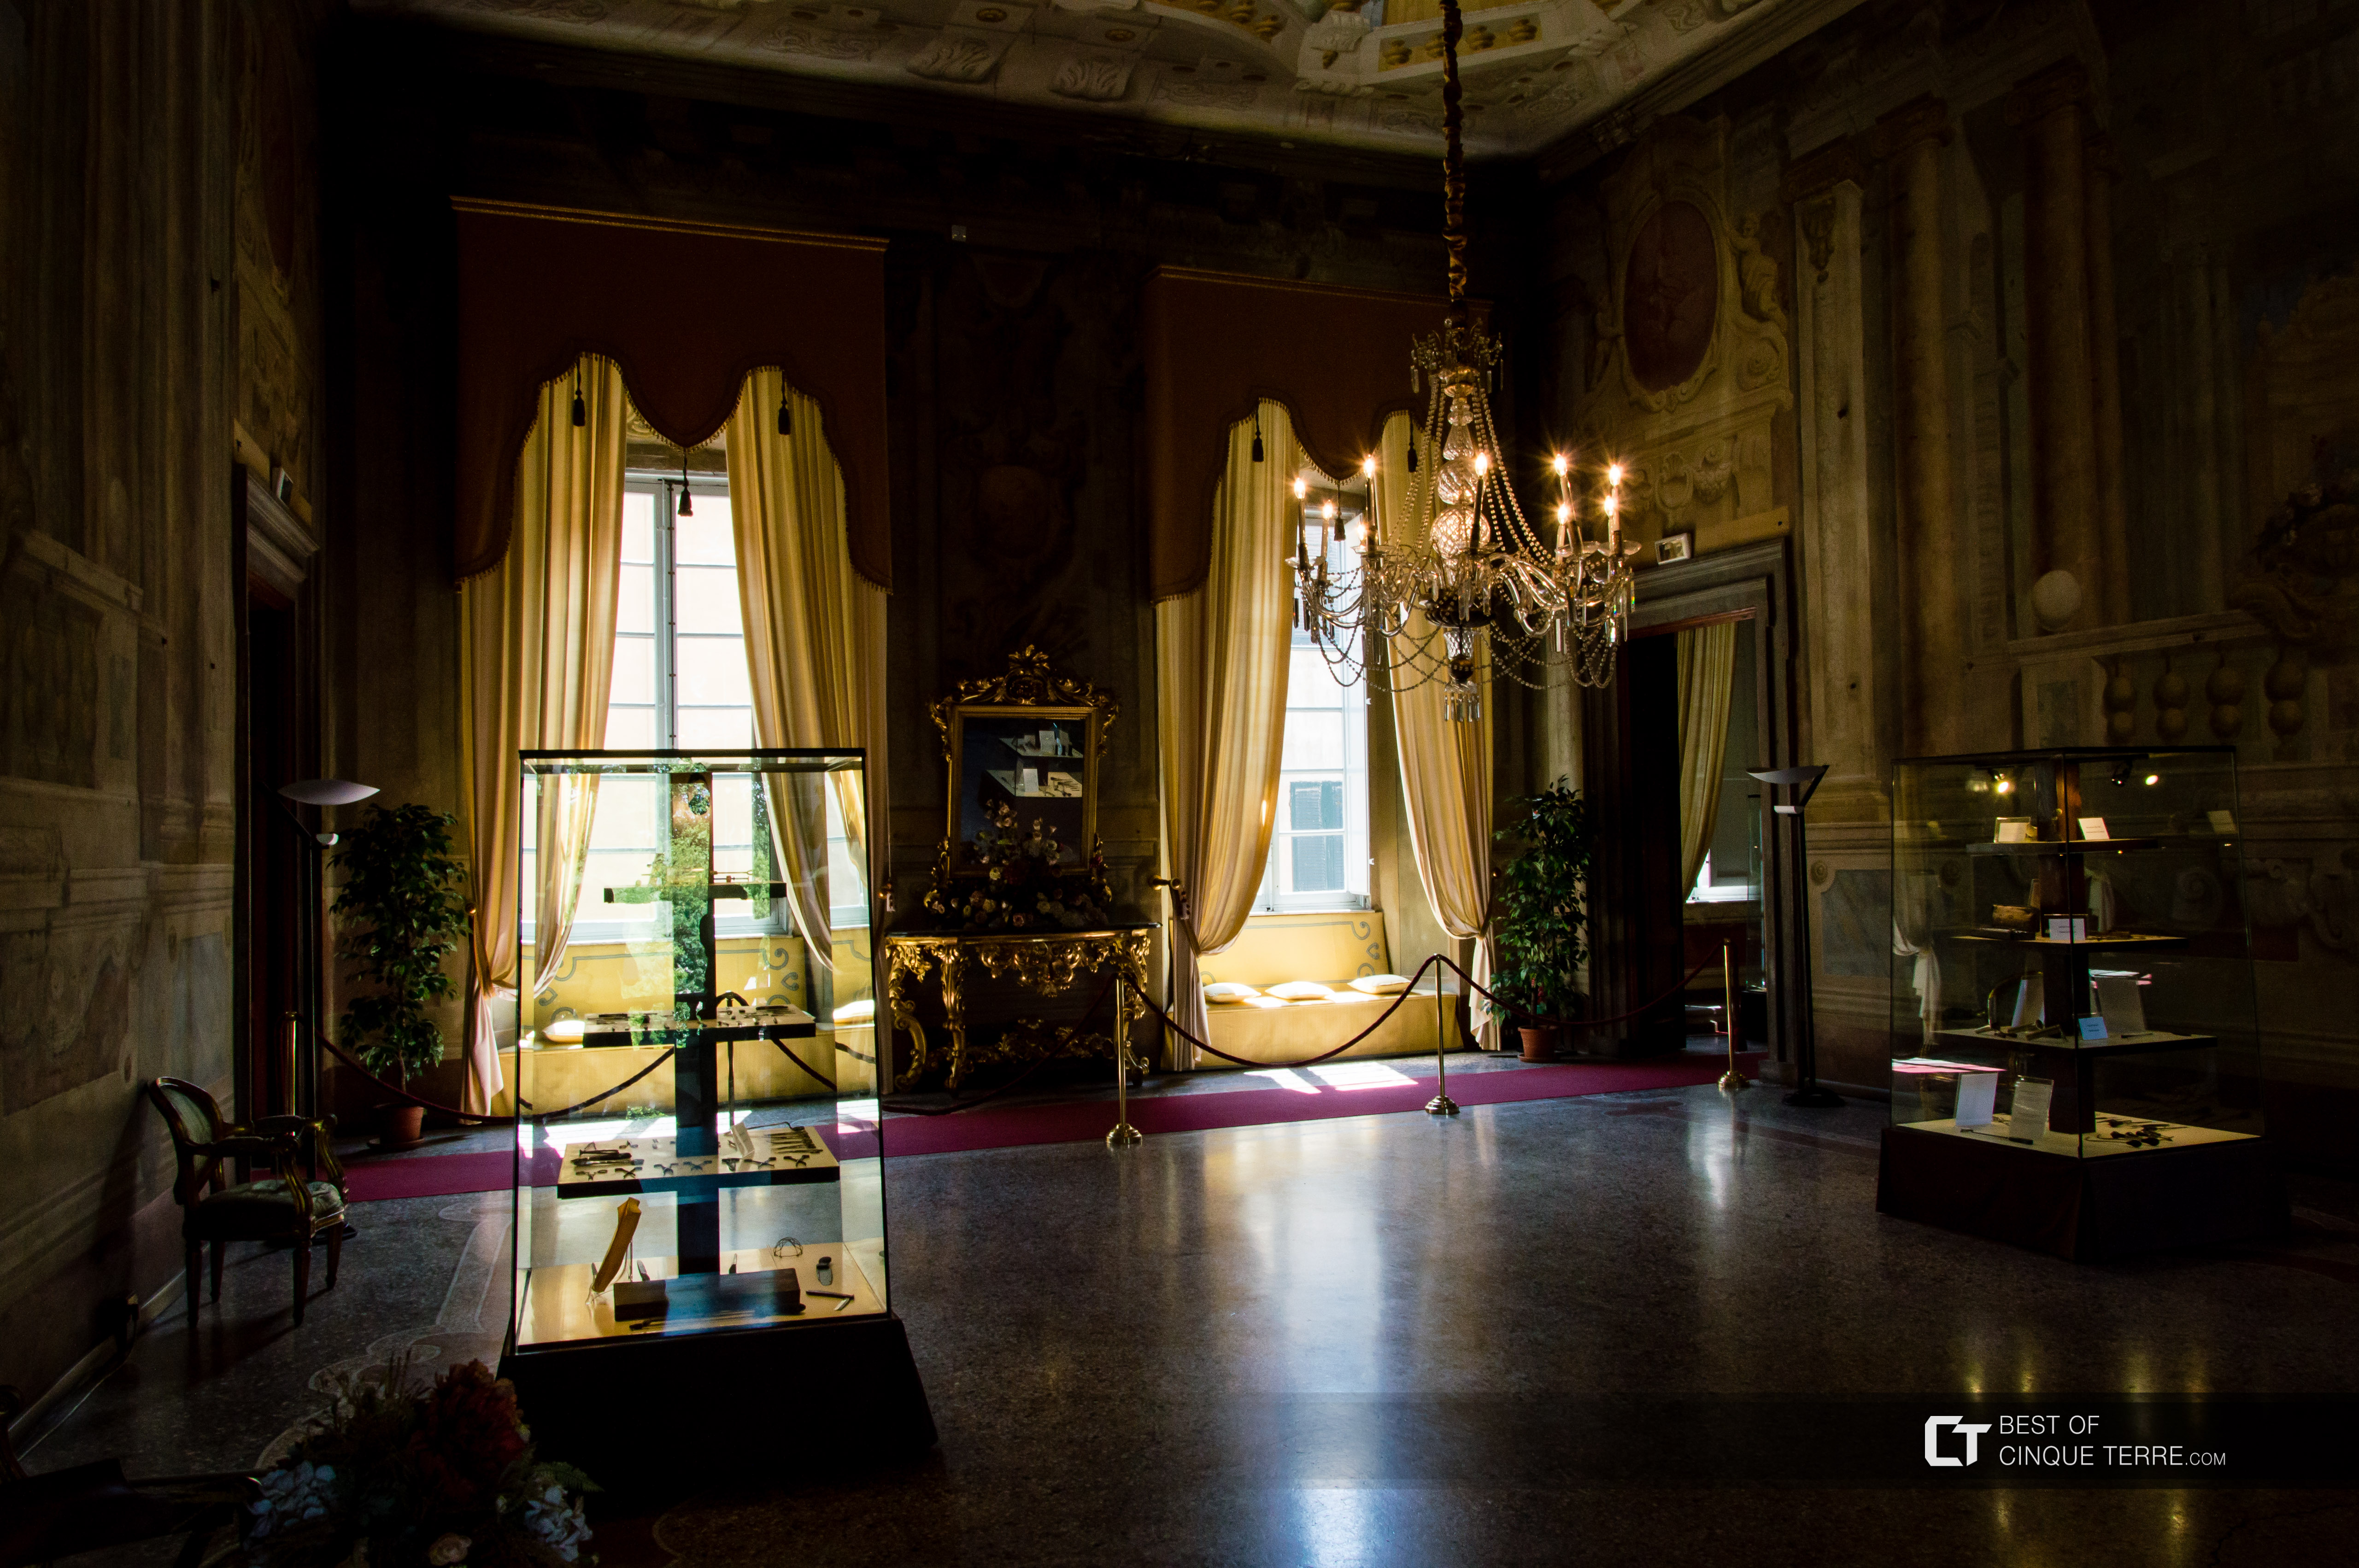 El interior de Palacio Pfanner, Lucca, Italia